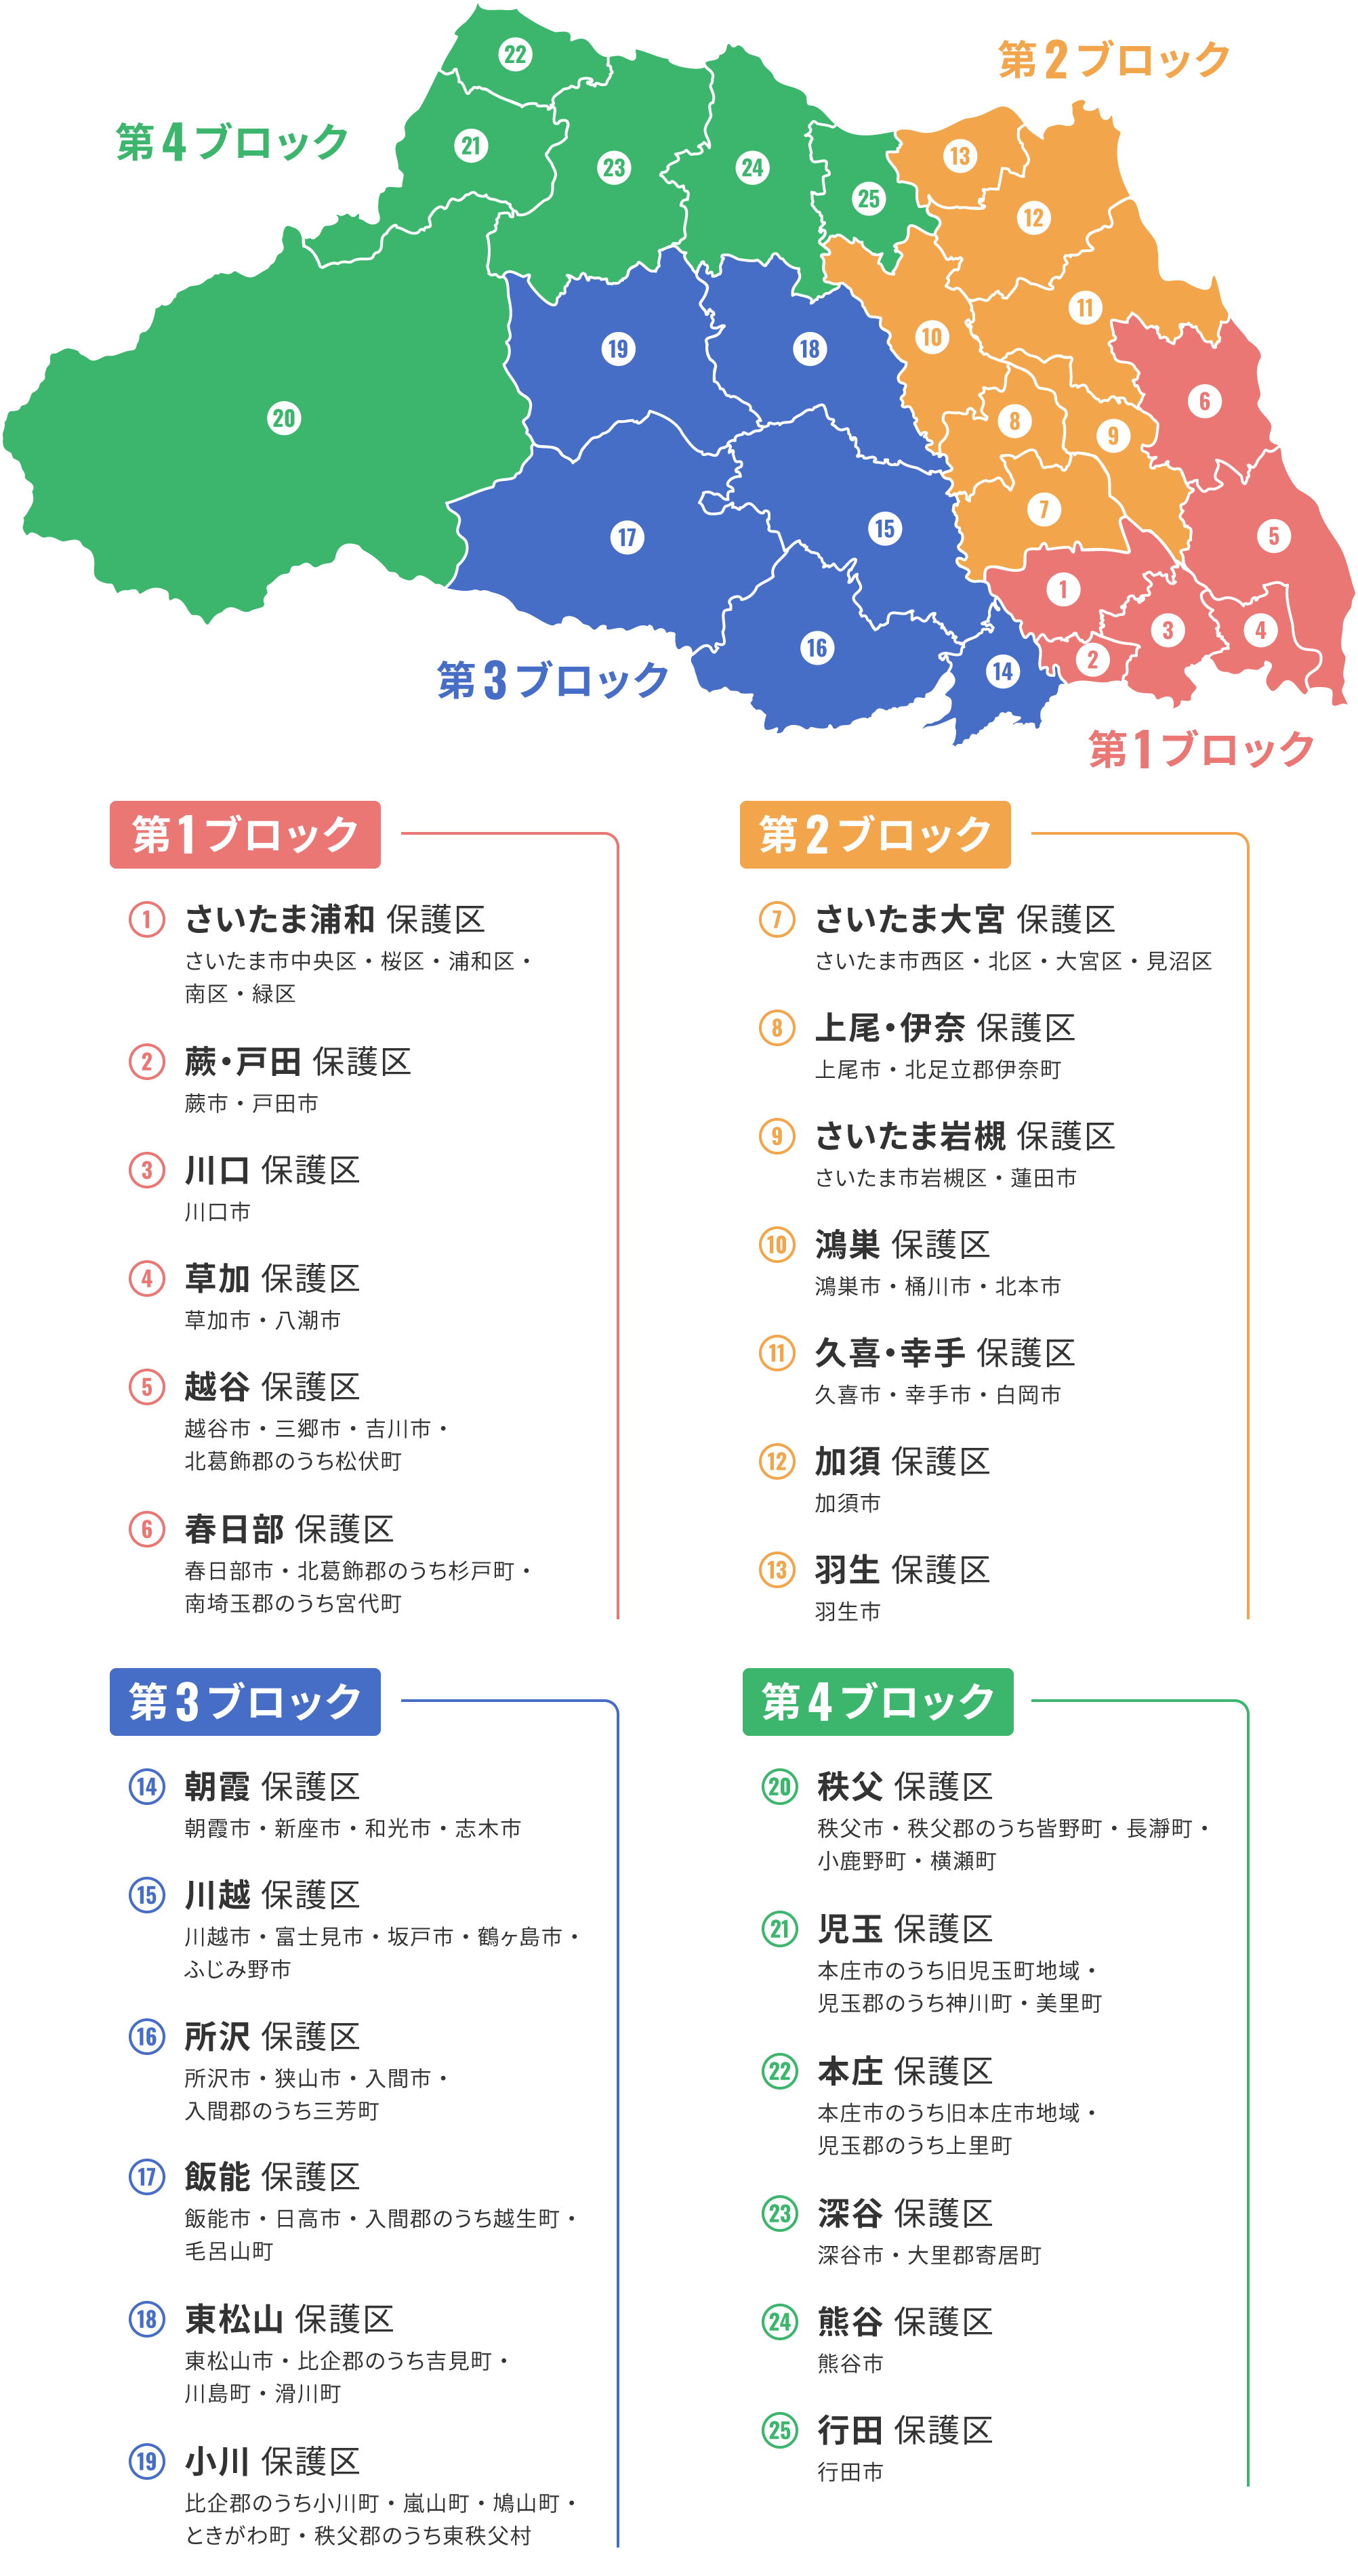 埼玉県内保護区更生市町村一覧の地図